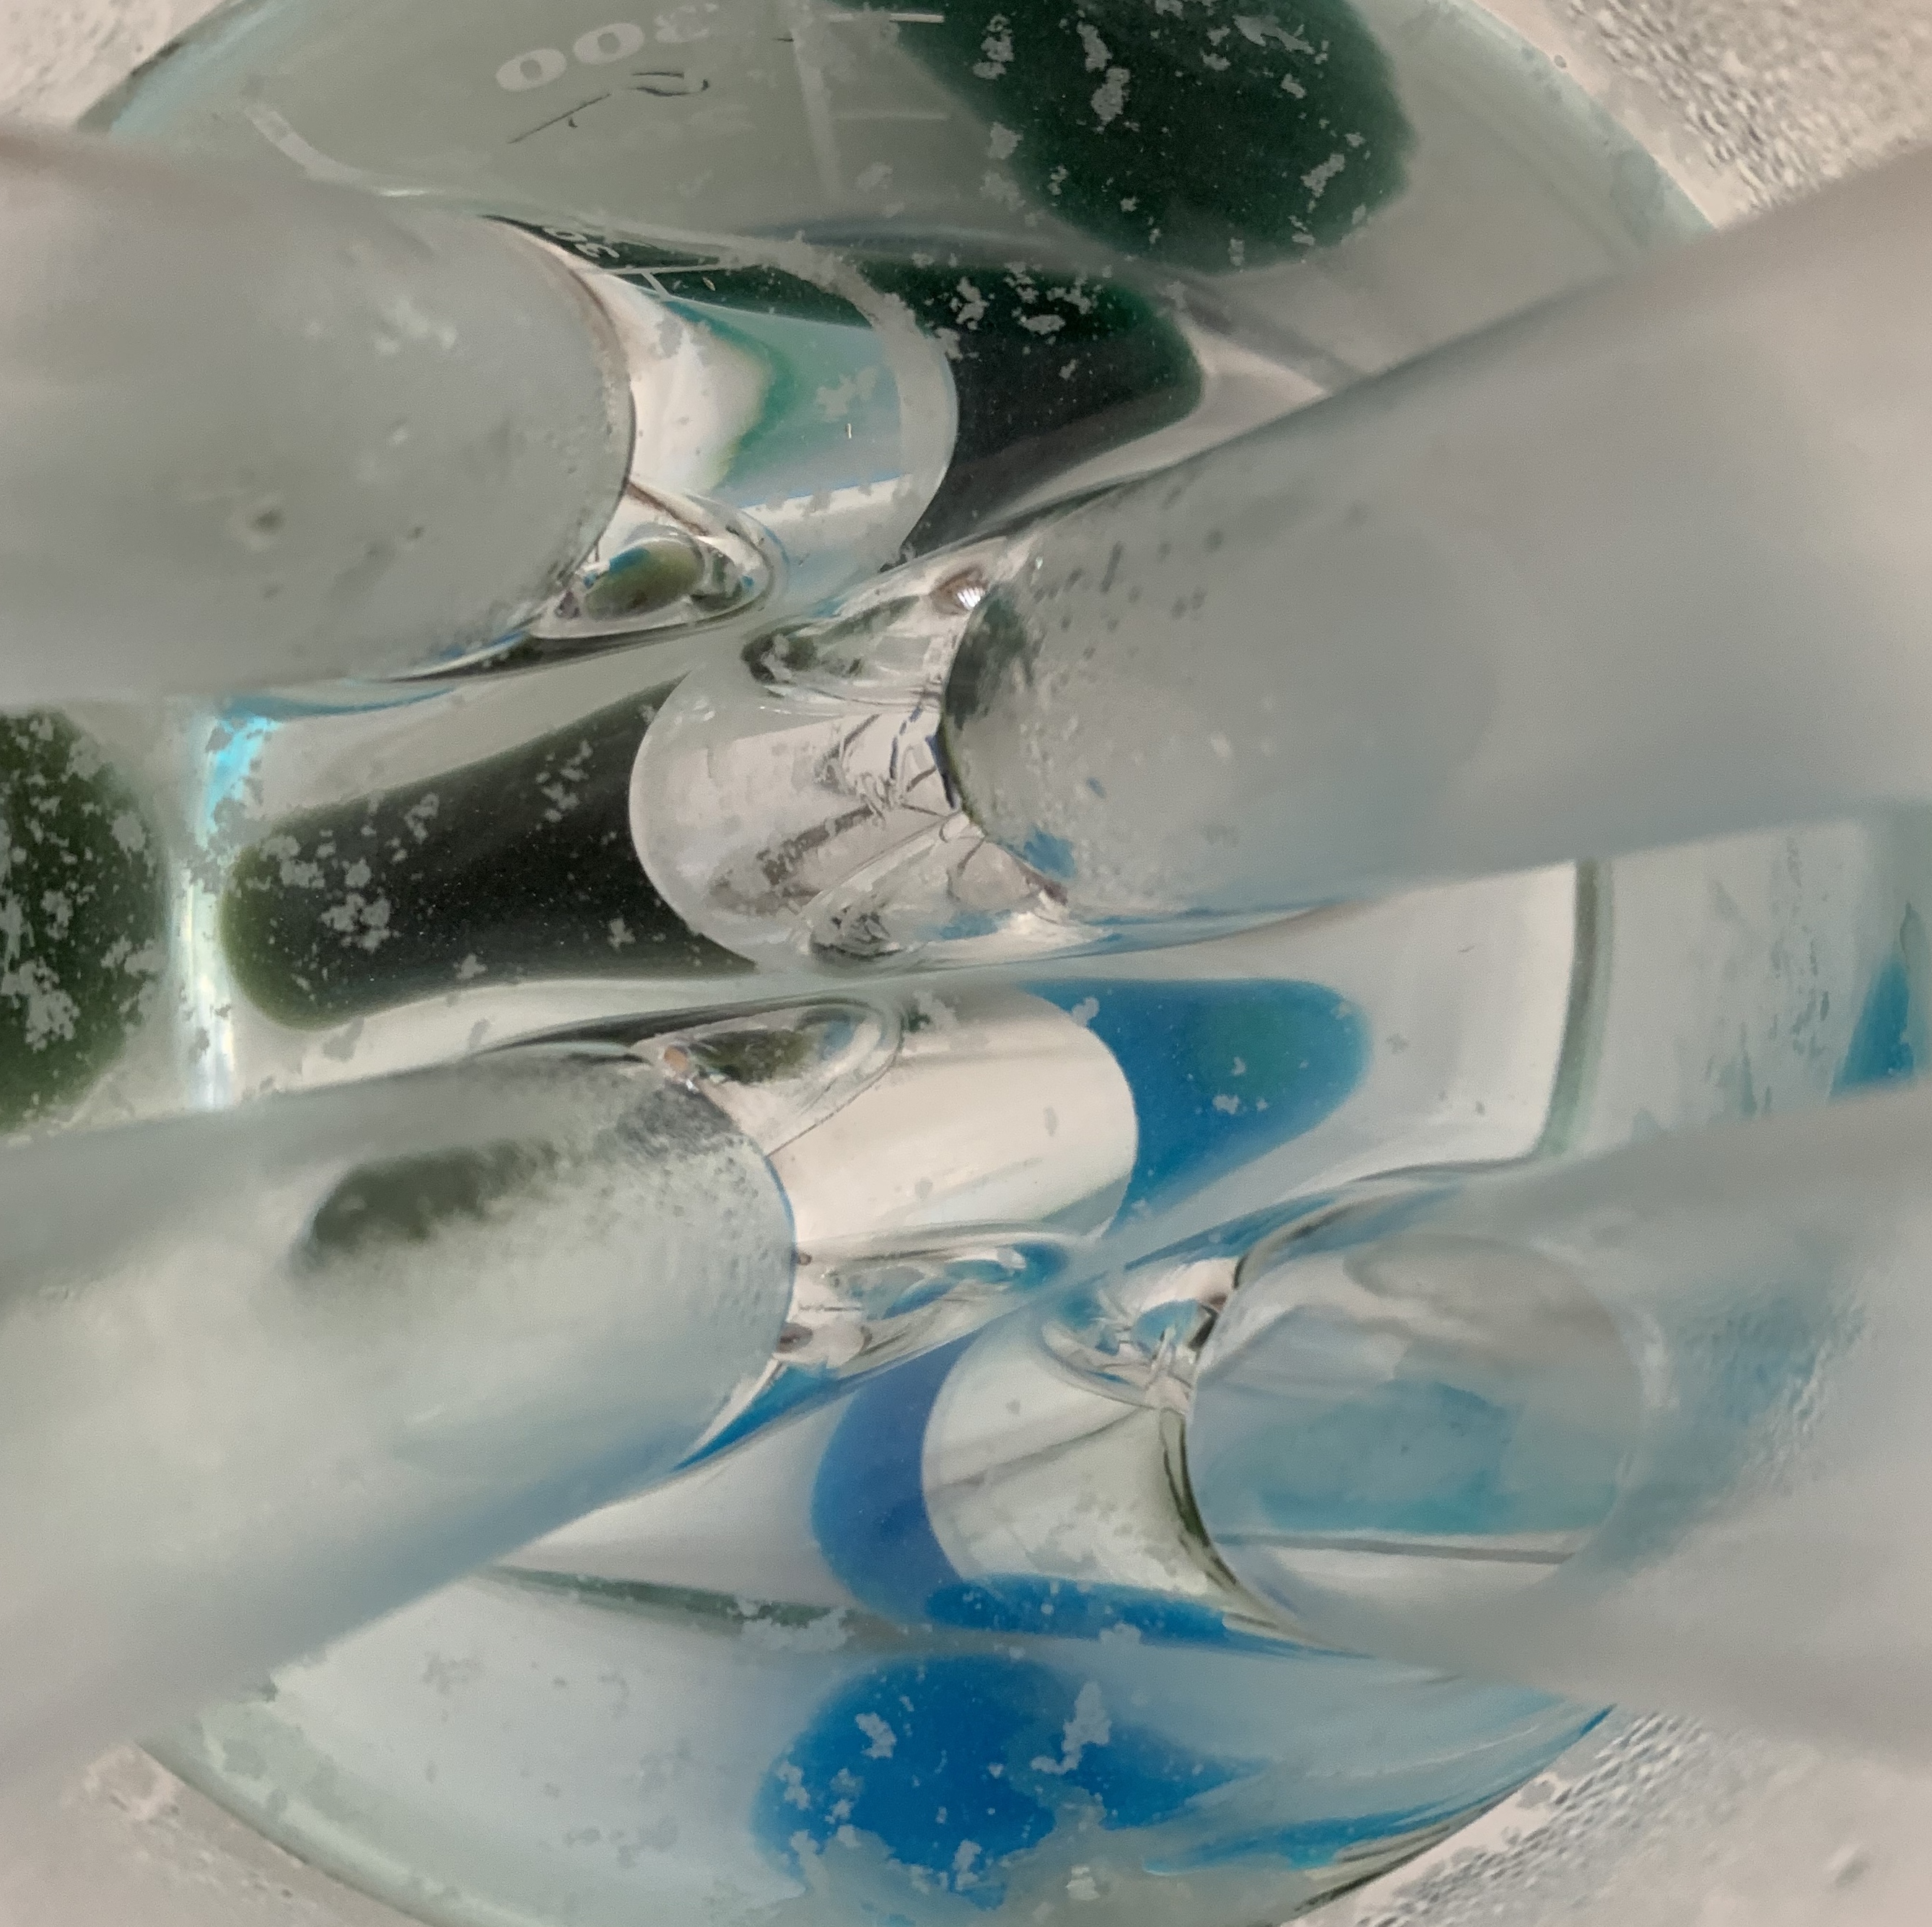 Bild aus dem Chemischen Fotokalender: Reagenzgläser in einem mit Wasser gefüllten Gefäß